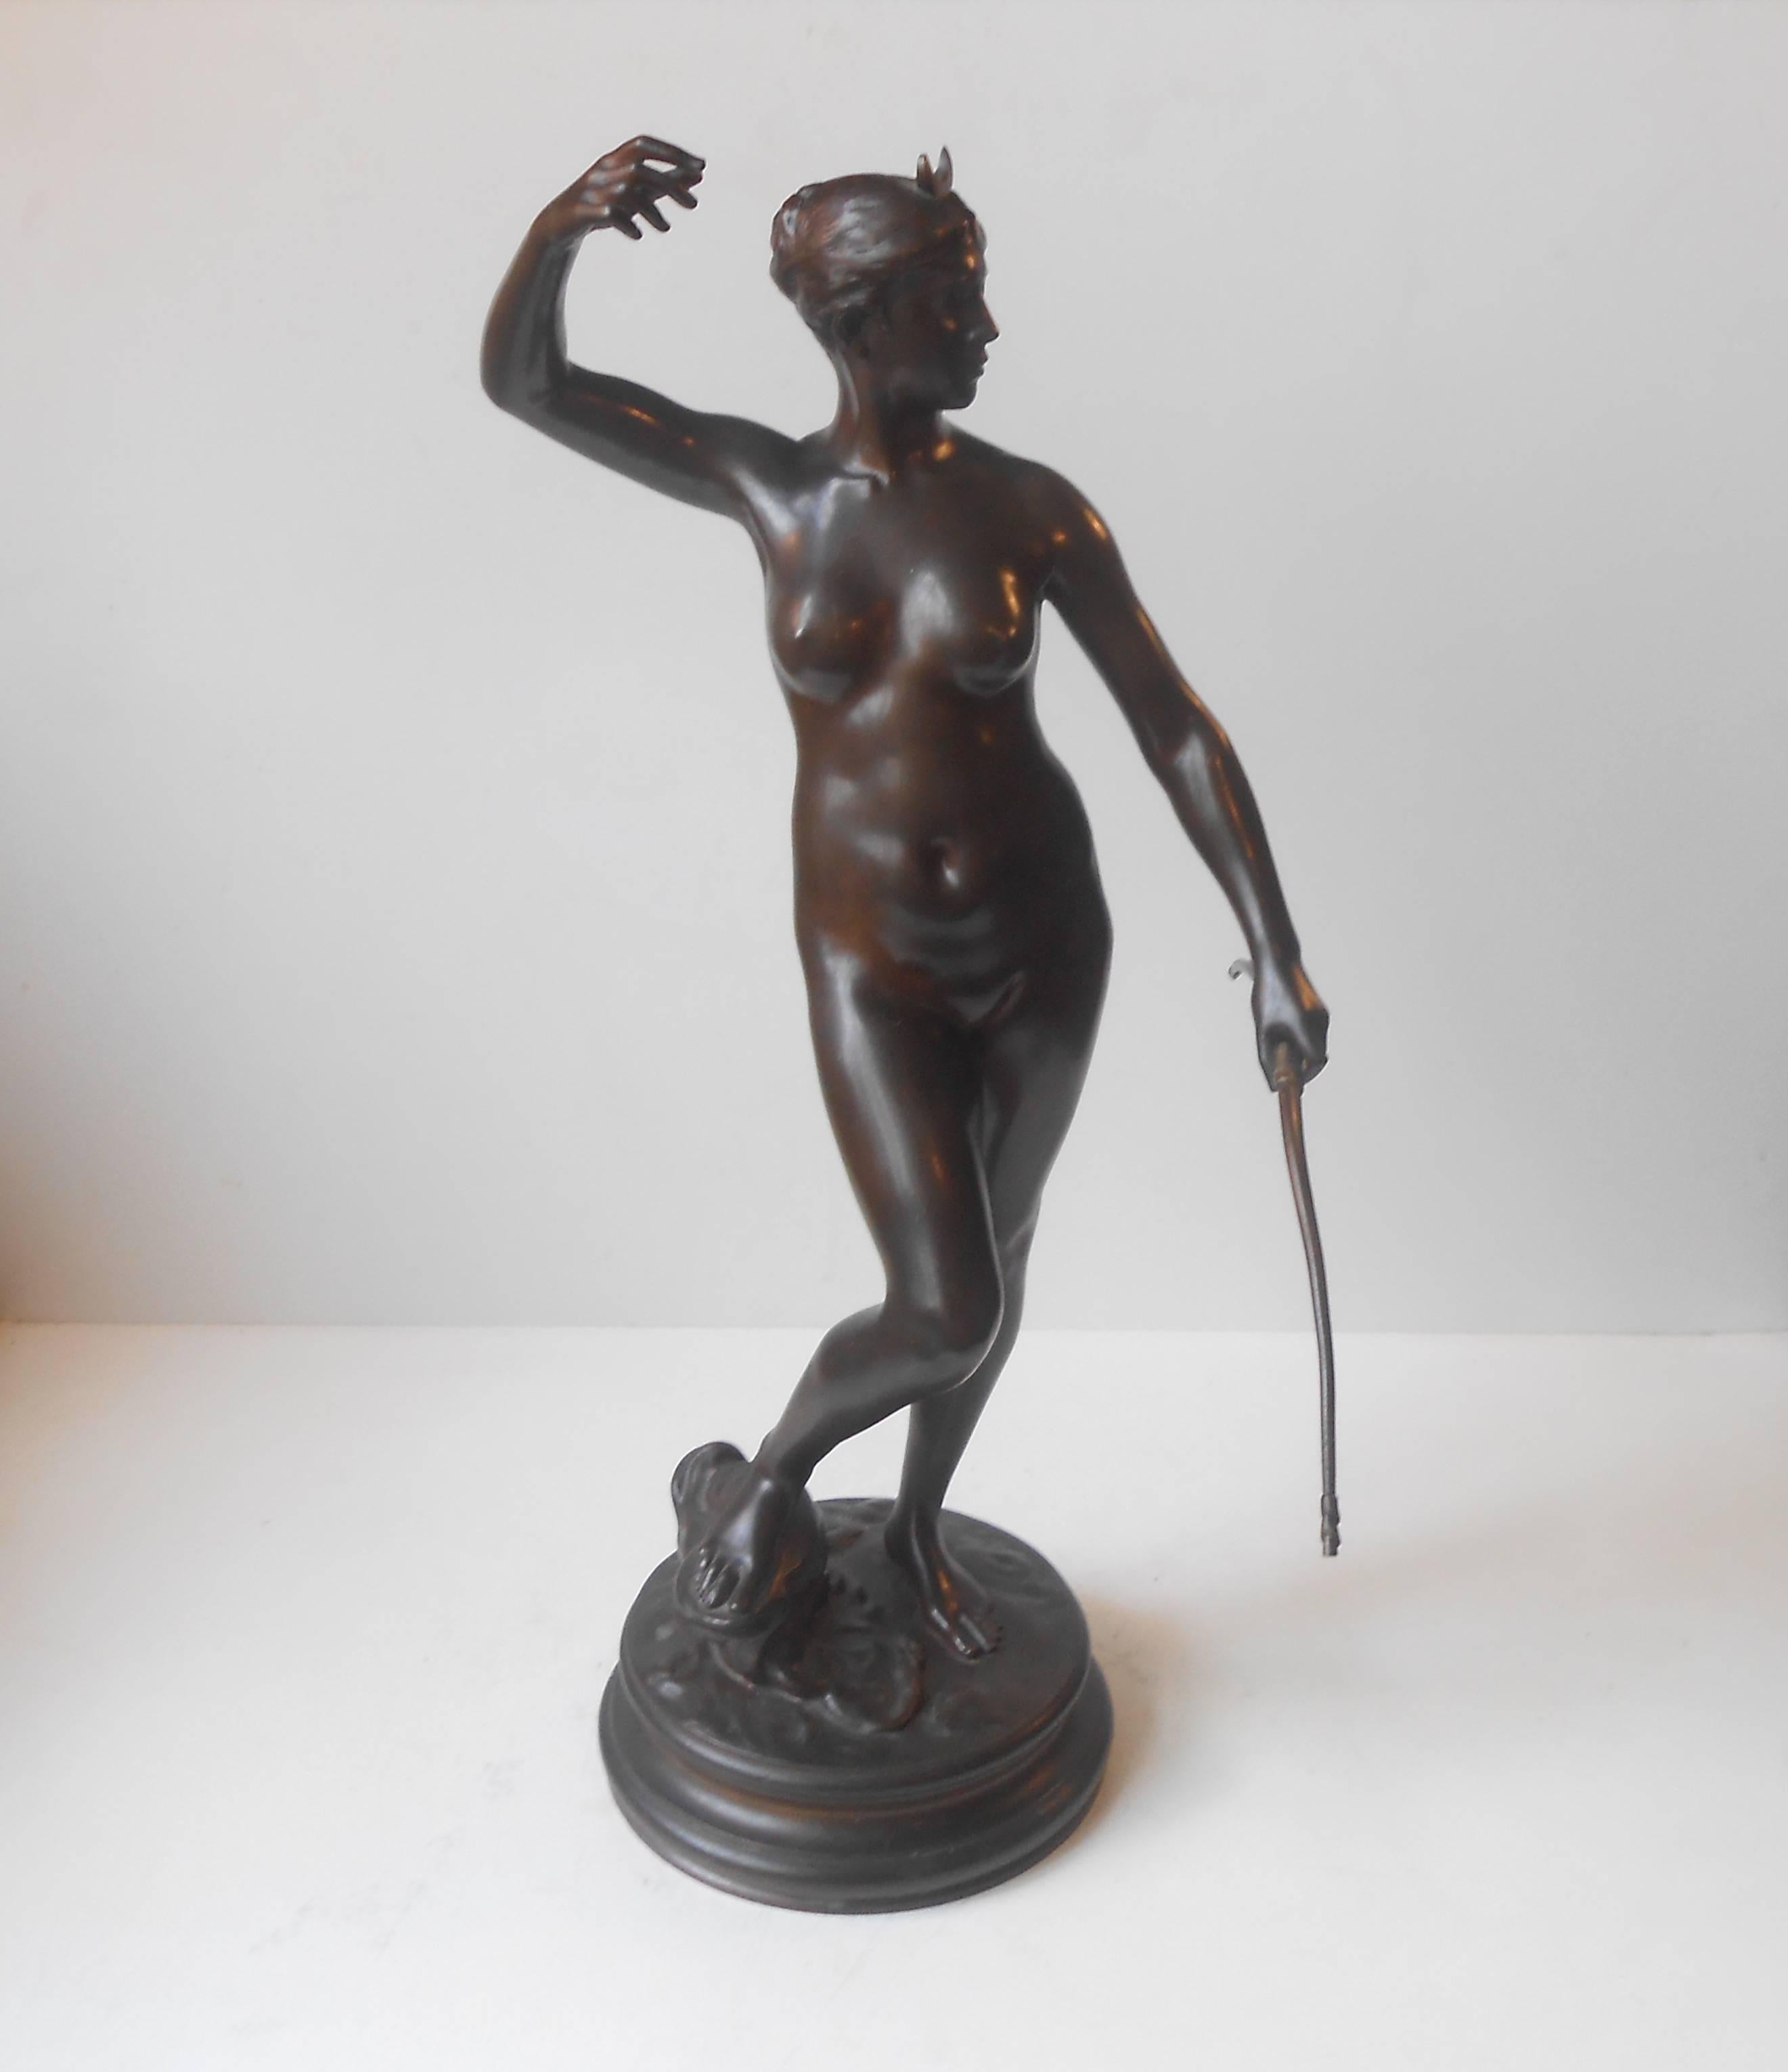 19th Century French Bronze Sculpture 'Diana' by Jean Alexandre Falguiere, Paris 1